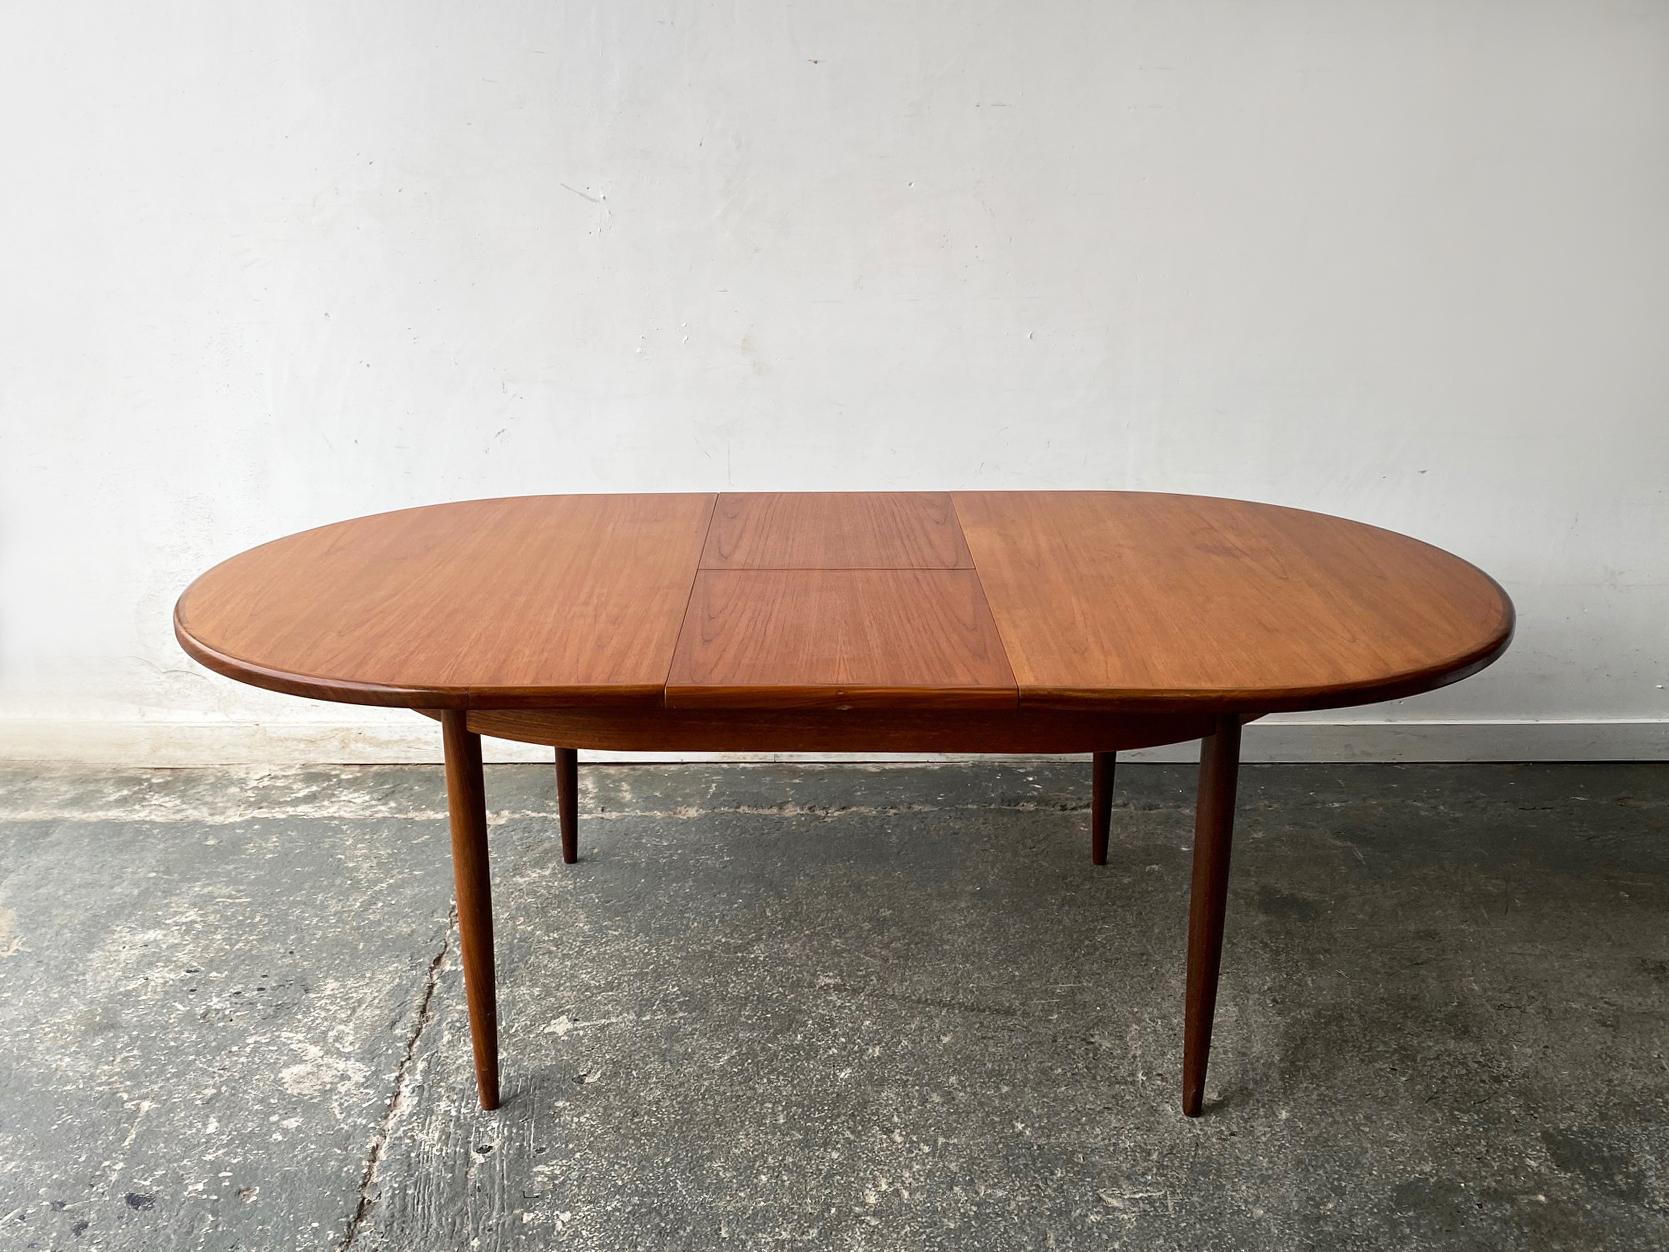 Une table de salle à manger à rallonge G-Plan classique conçue par Victor Wilkins. Conçue dans un style danois minimaliste, avec des lignes épurées et des pieds légèrement effilés.

Taille 
Largeur étendue 210cm
Largeur sans extension 120cm